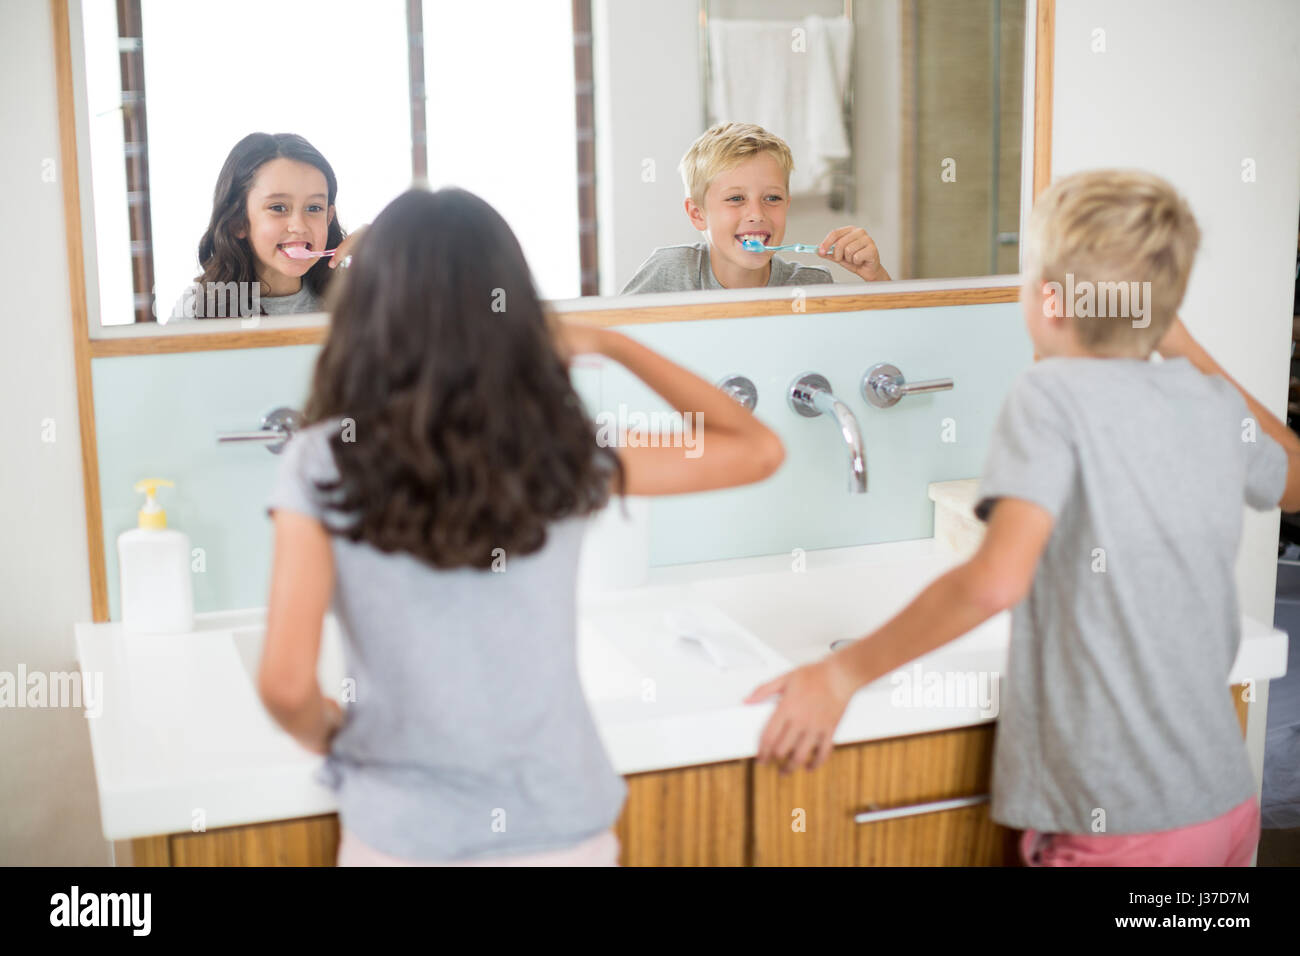 Siblings brushing their teeth in bathroom at home Stock Photo